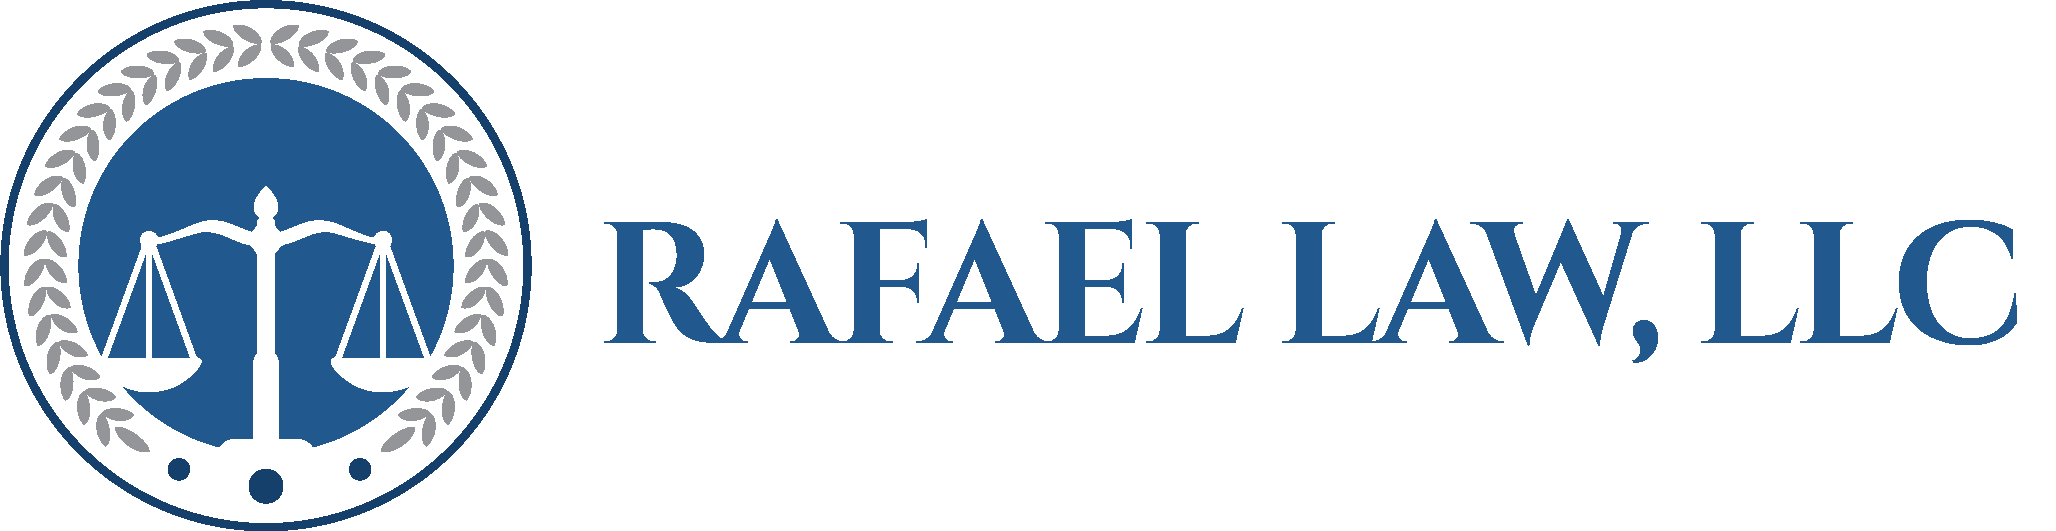 Rafael Law, LLC